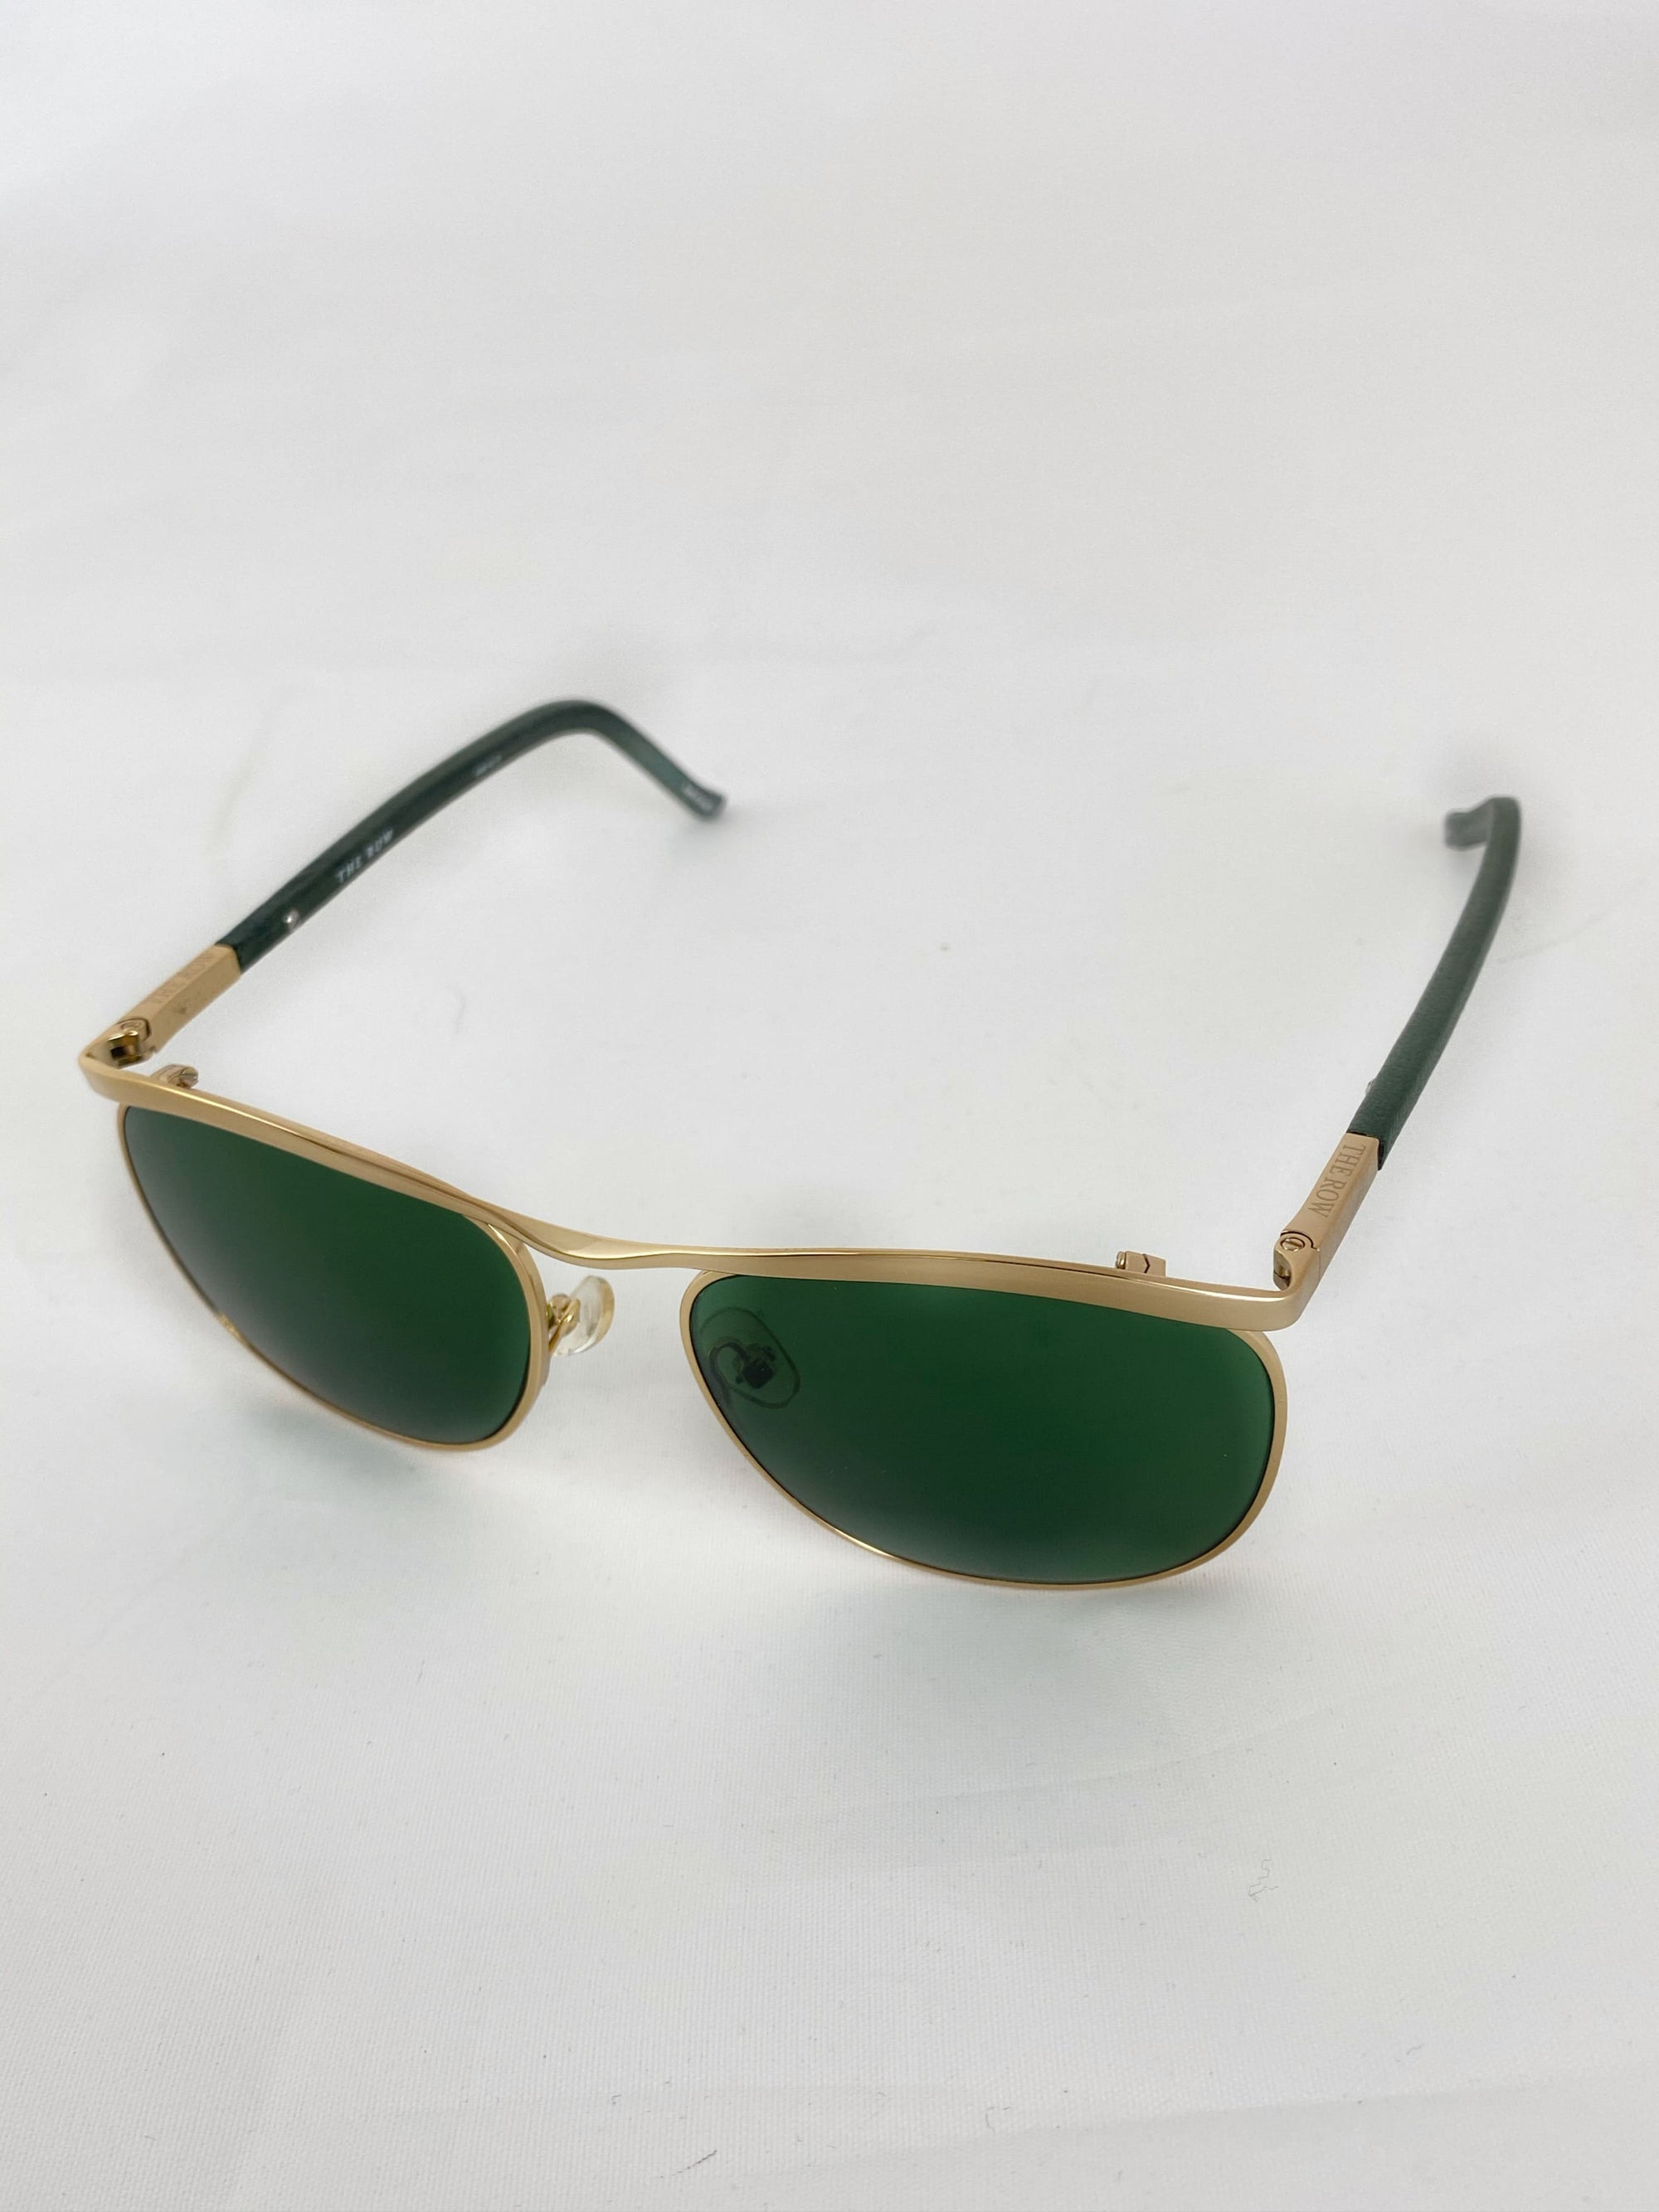 Produktbild der Linda Farrow Sunglasses The Row green/gold 5419-145 von vorne mit weißem Hintergrund.